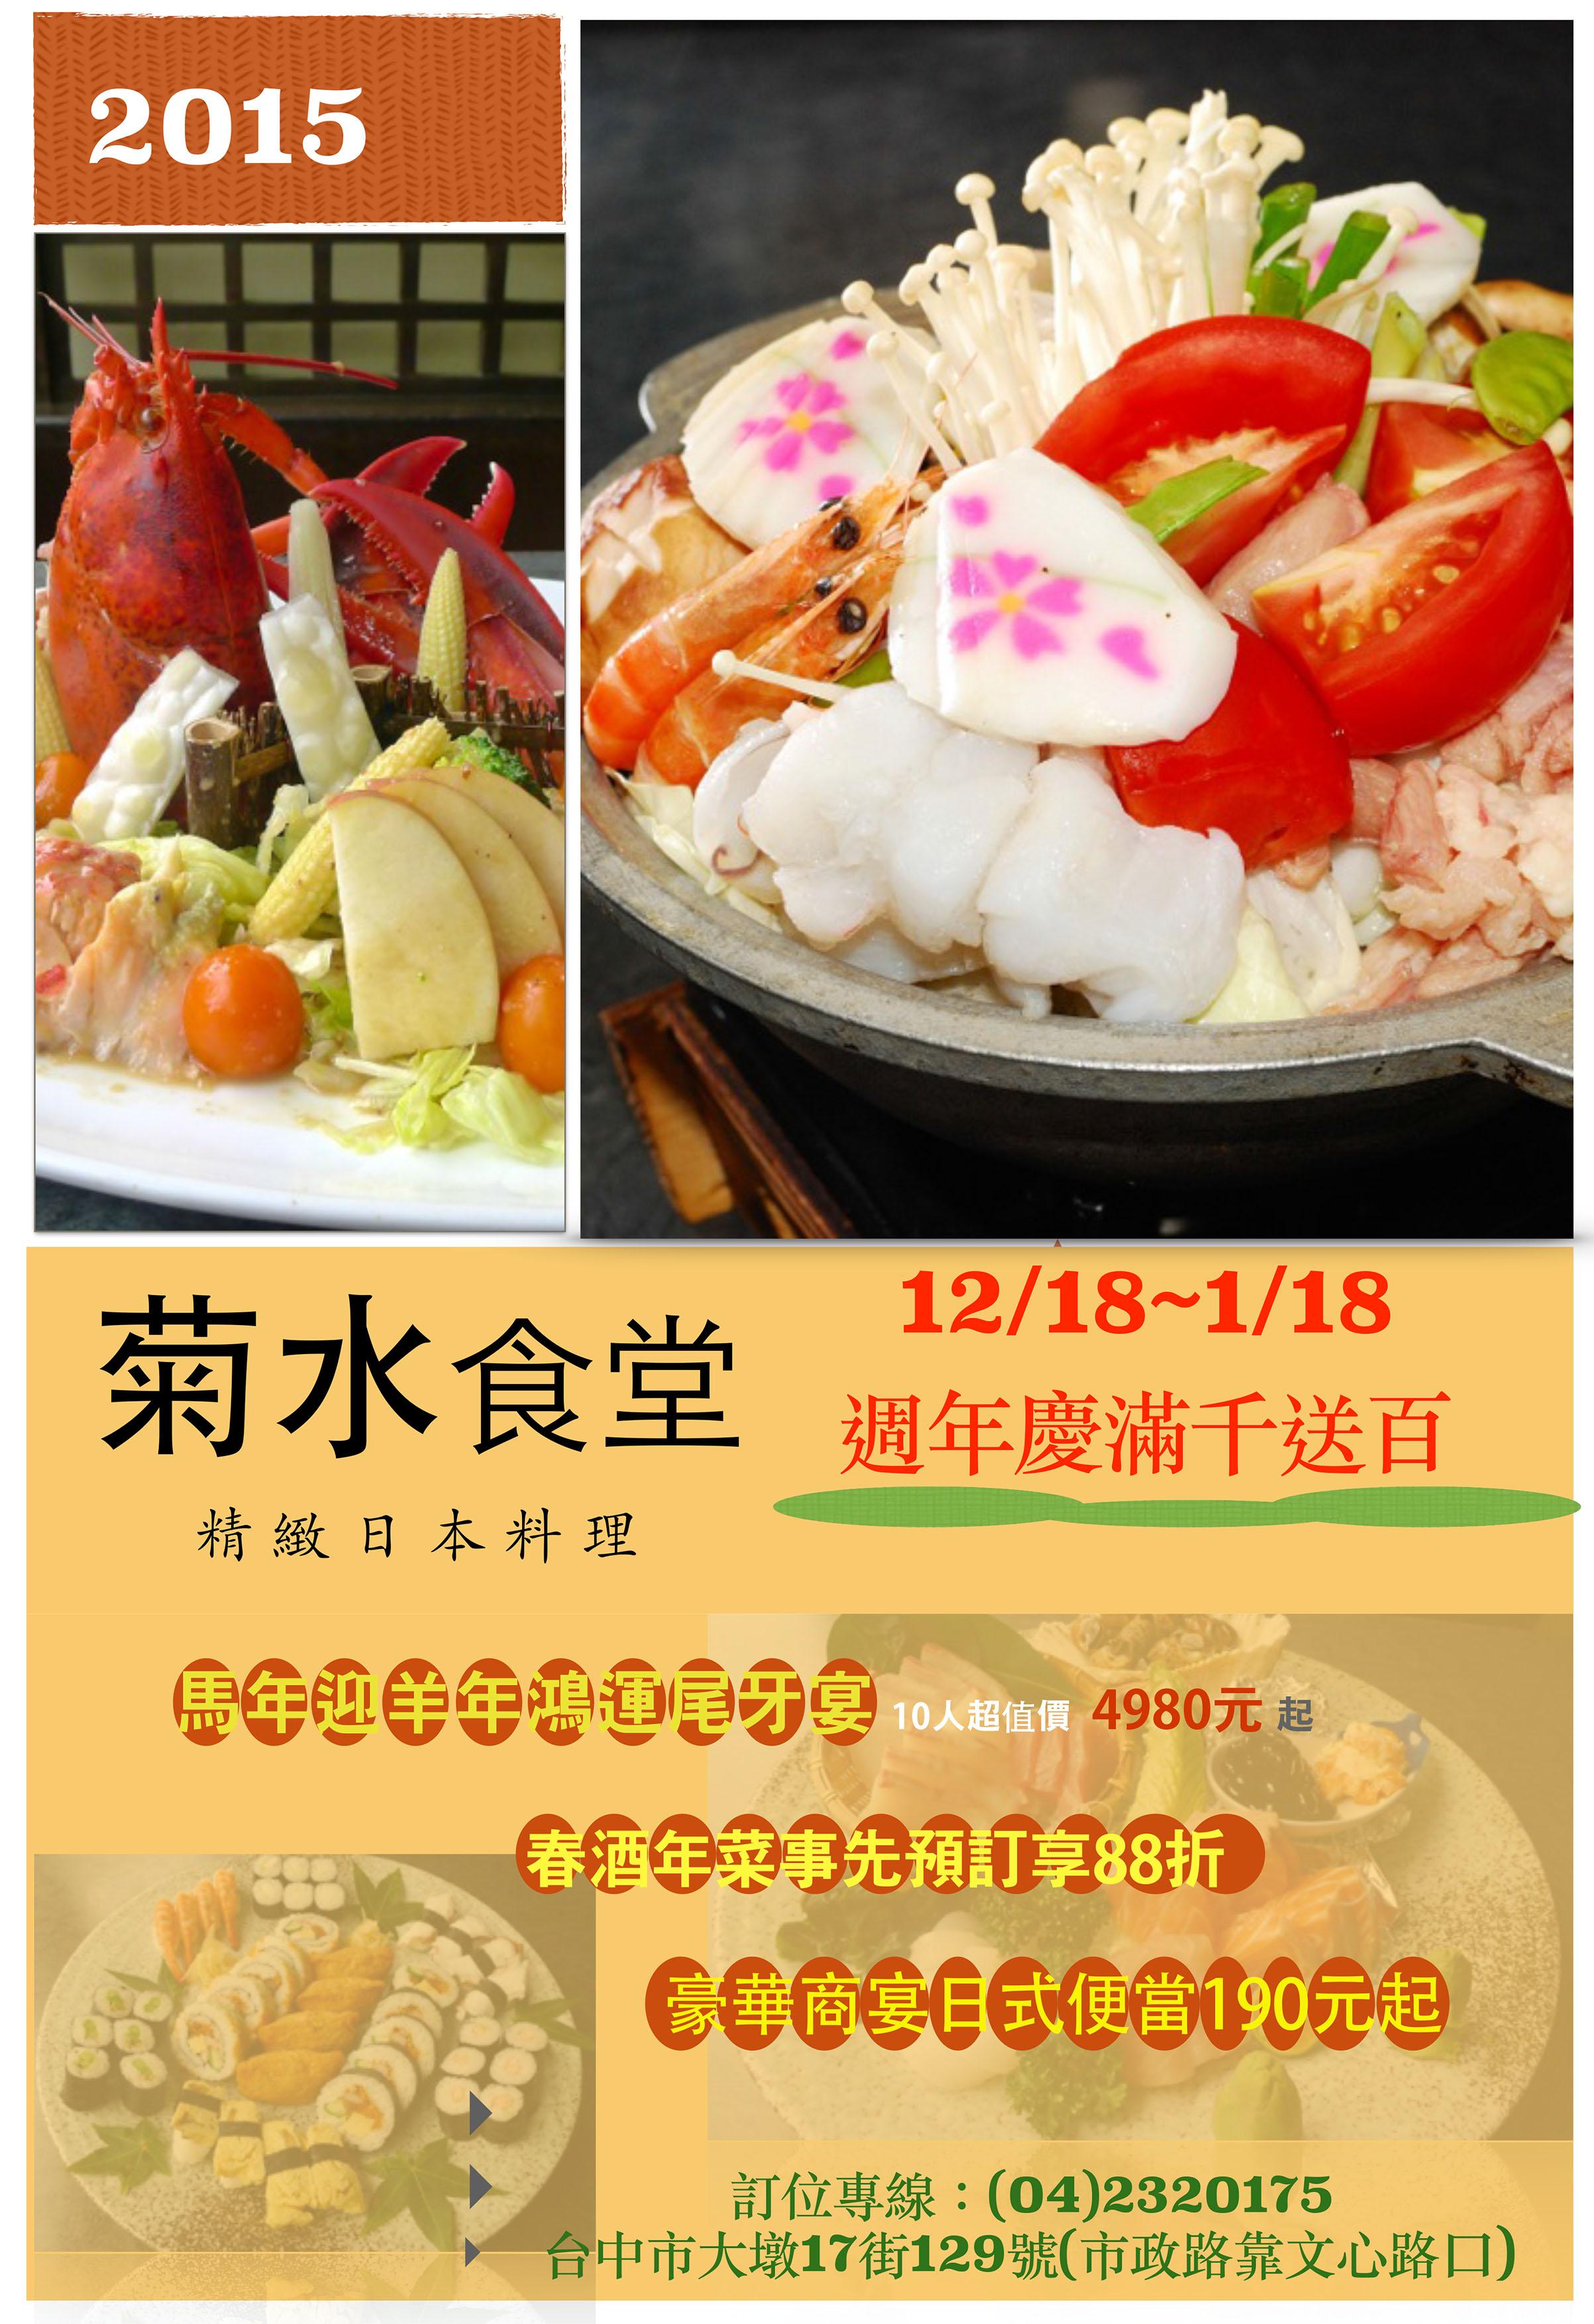 菊水食堂精緻料理每日前10名限定商品半價優惠